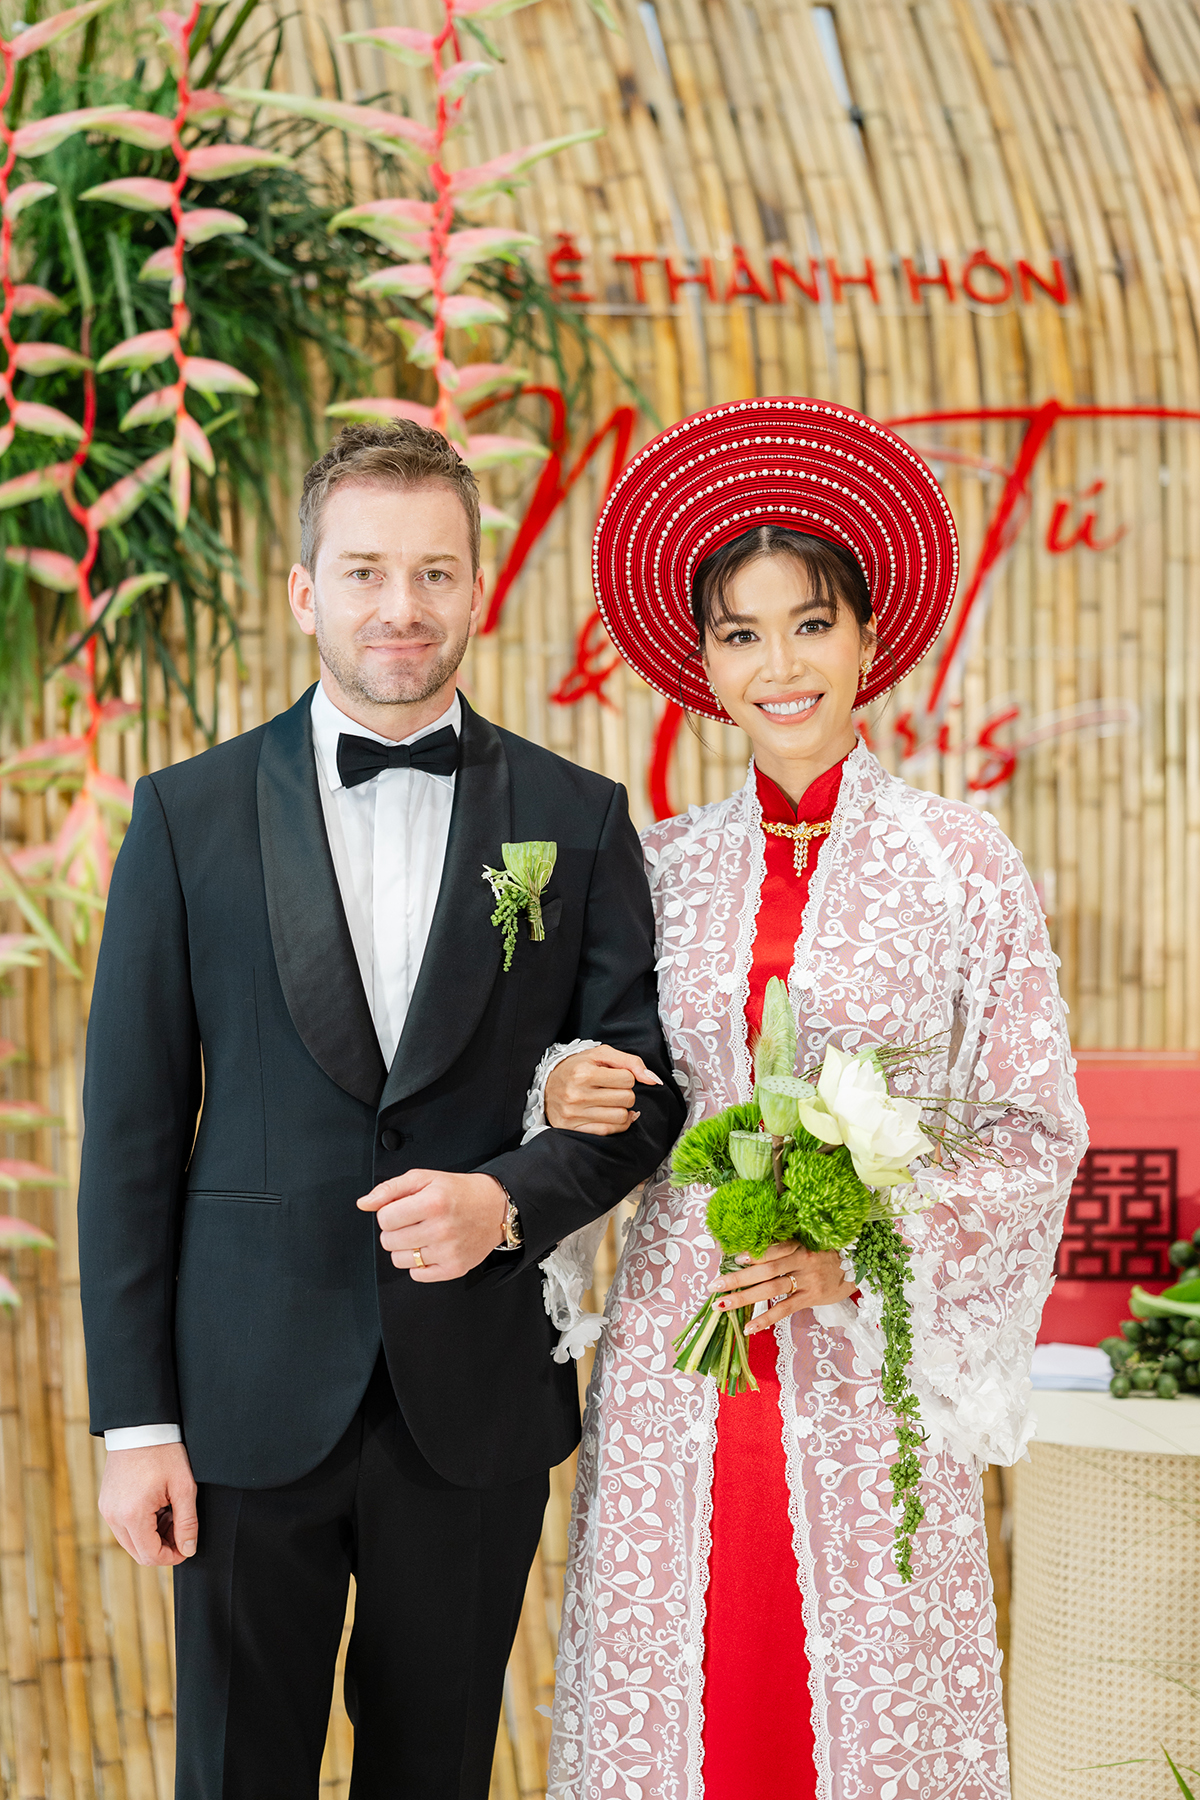 Dàn sao Việt diện đồ đen dự đám cưới Minh Tú, cô dâu mặc Áo dài đỏ lấy cảm hứng từ ba mẹ - ảnh 1